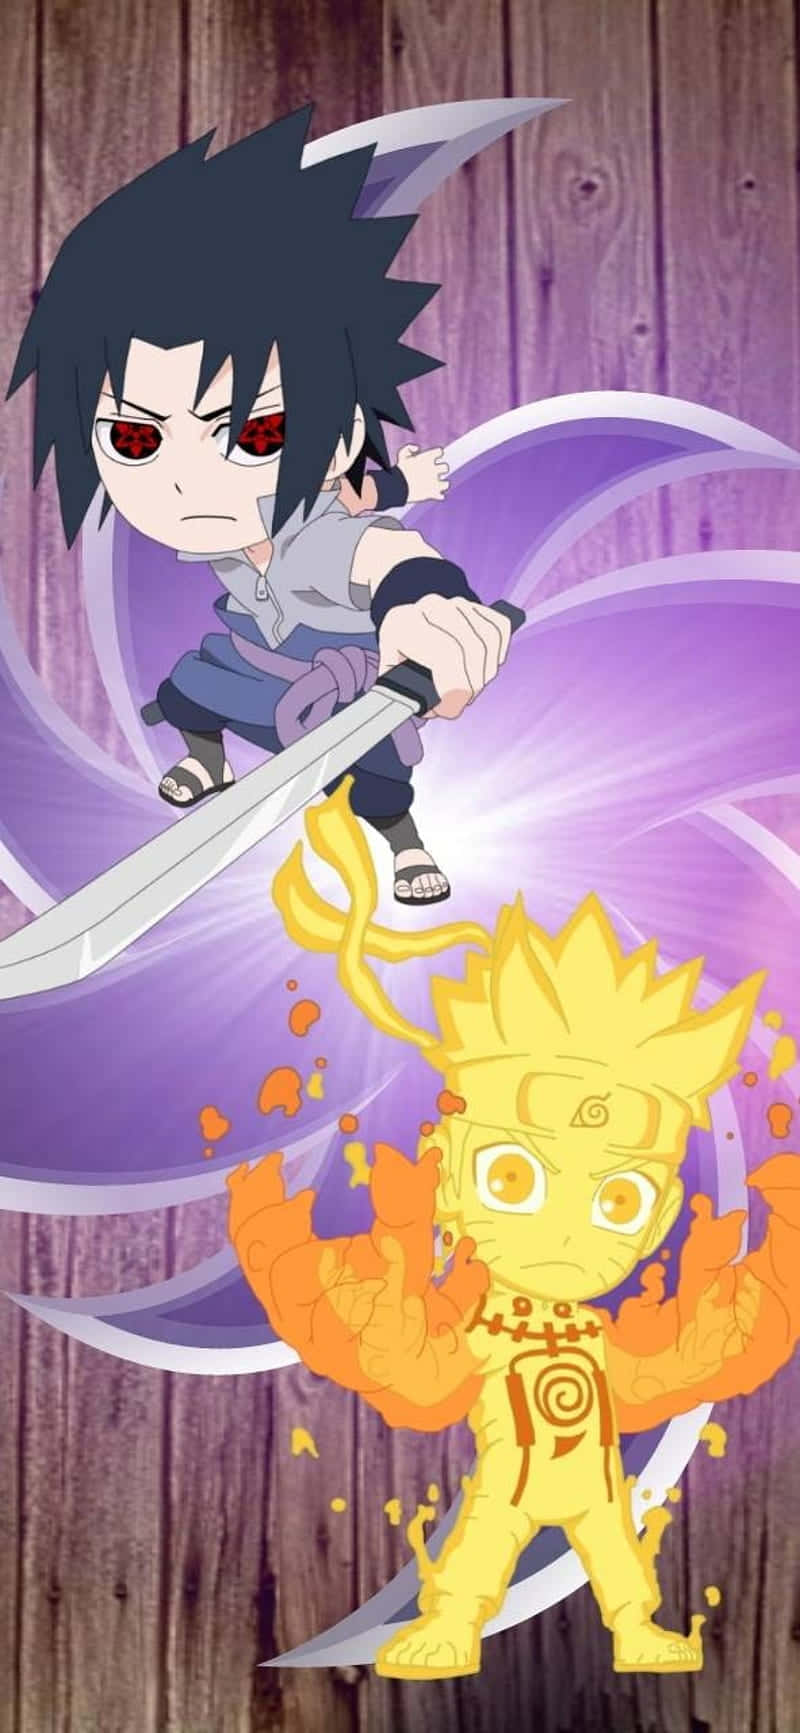 Tải wallpaper Naruto Chibi ngay bây giờ để trang trí cho thiết bị của bạn! Hình ảnh đầy chất lượng và tinh tế về các nhân vật trong Naruto sẽ khiến bạn cảm thấy hài lòng và thỏa mãn. Bạn sẽ không phải mất quá nhiều thời gian để tìm kiếm những hình nền Naruto Chibi đẹp nhất.